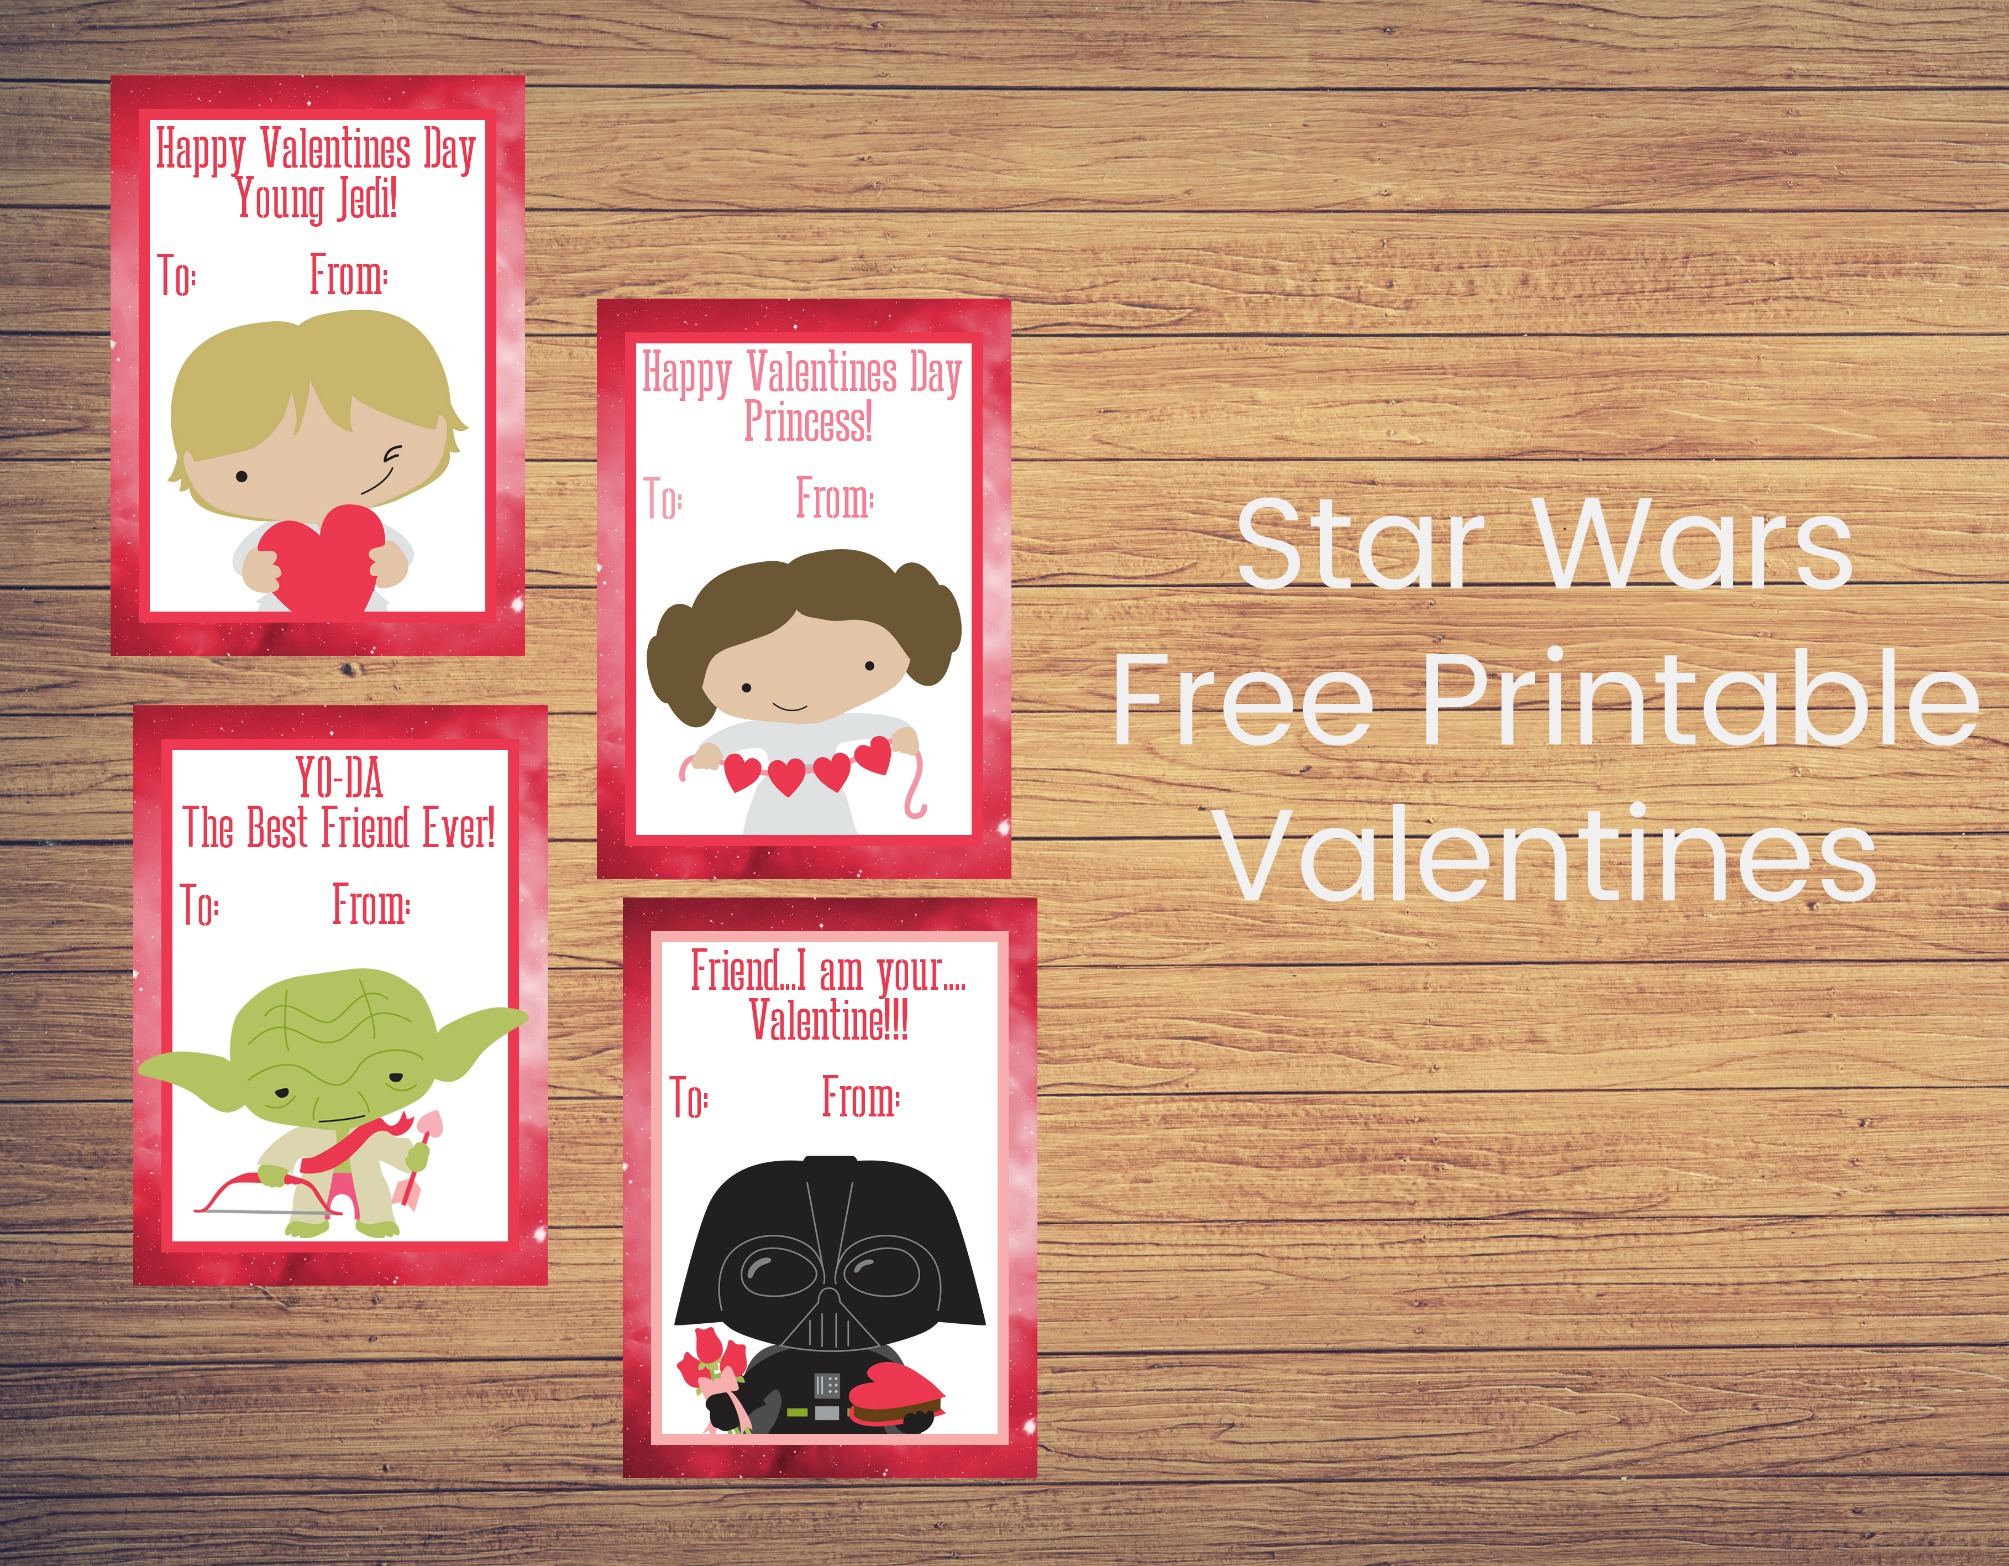 Star Wars Free Printable Valentines